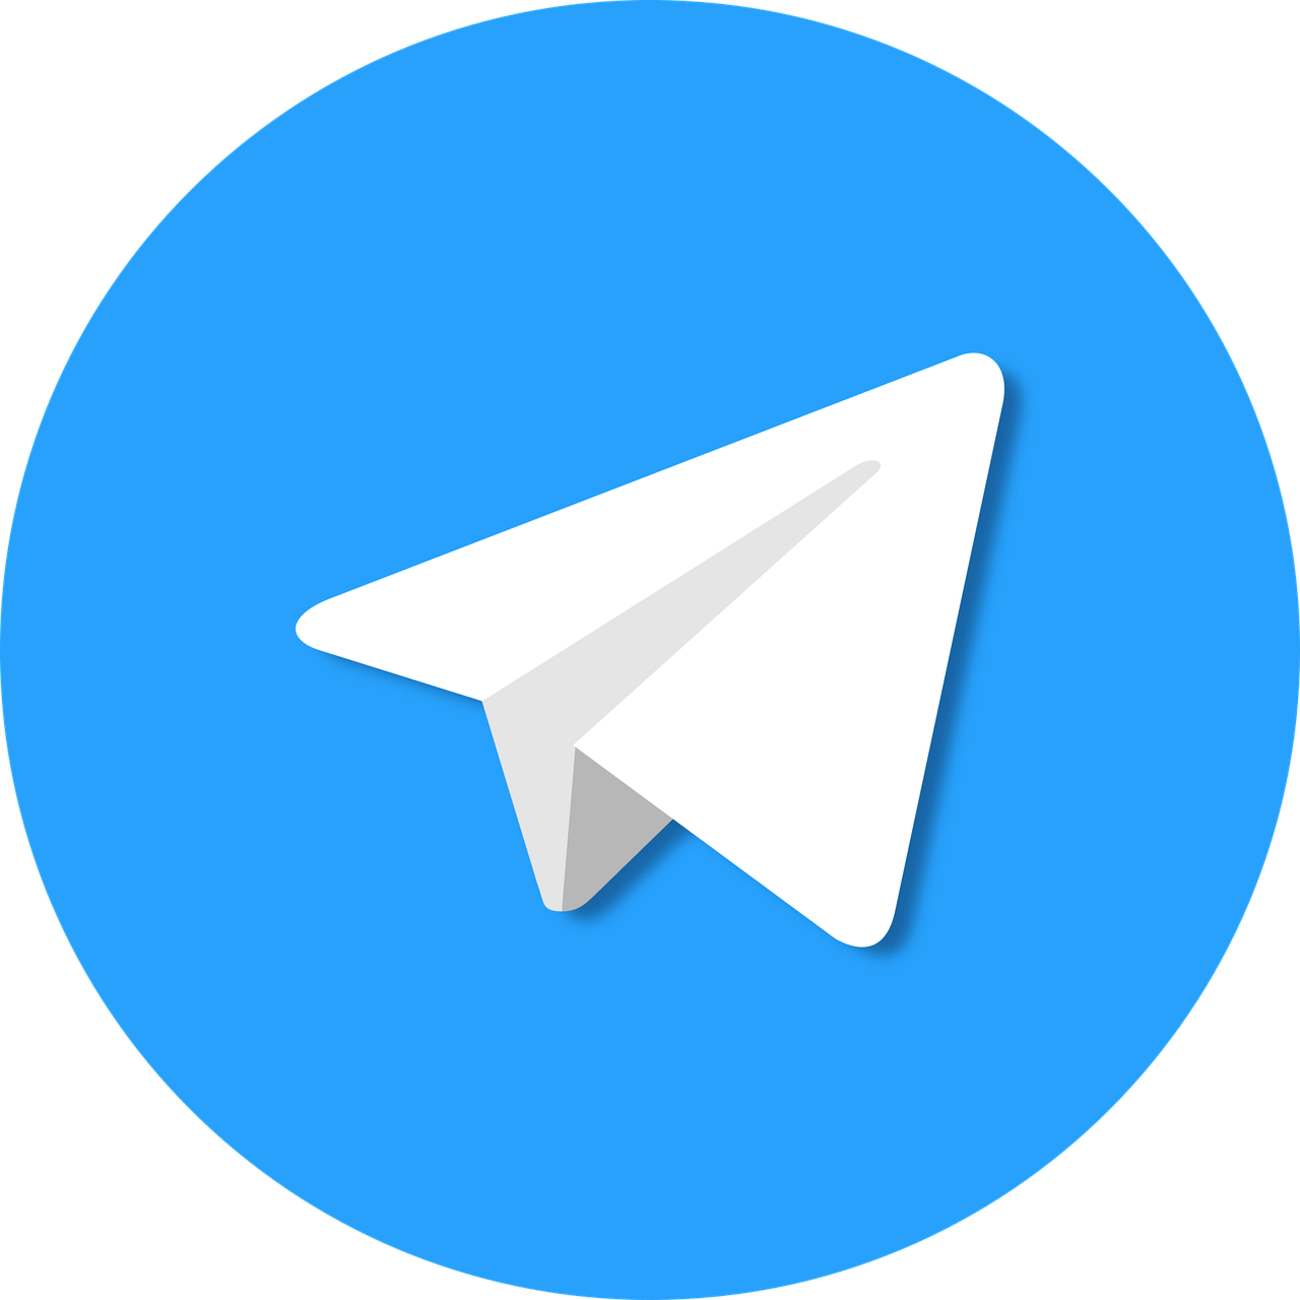 ¿Cómo saber si un contacto tiene Telegram?